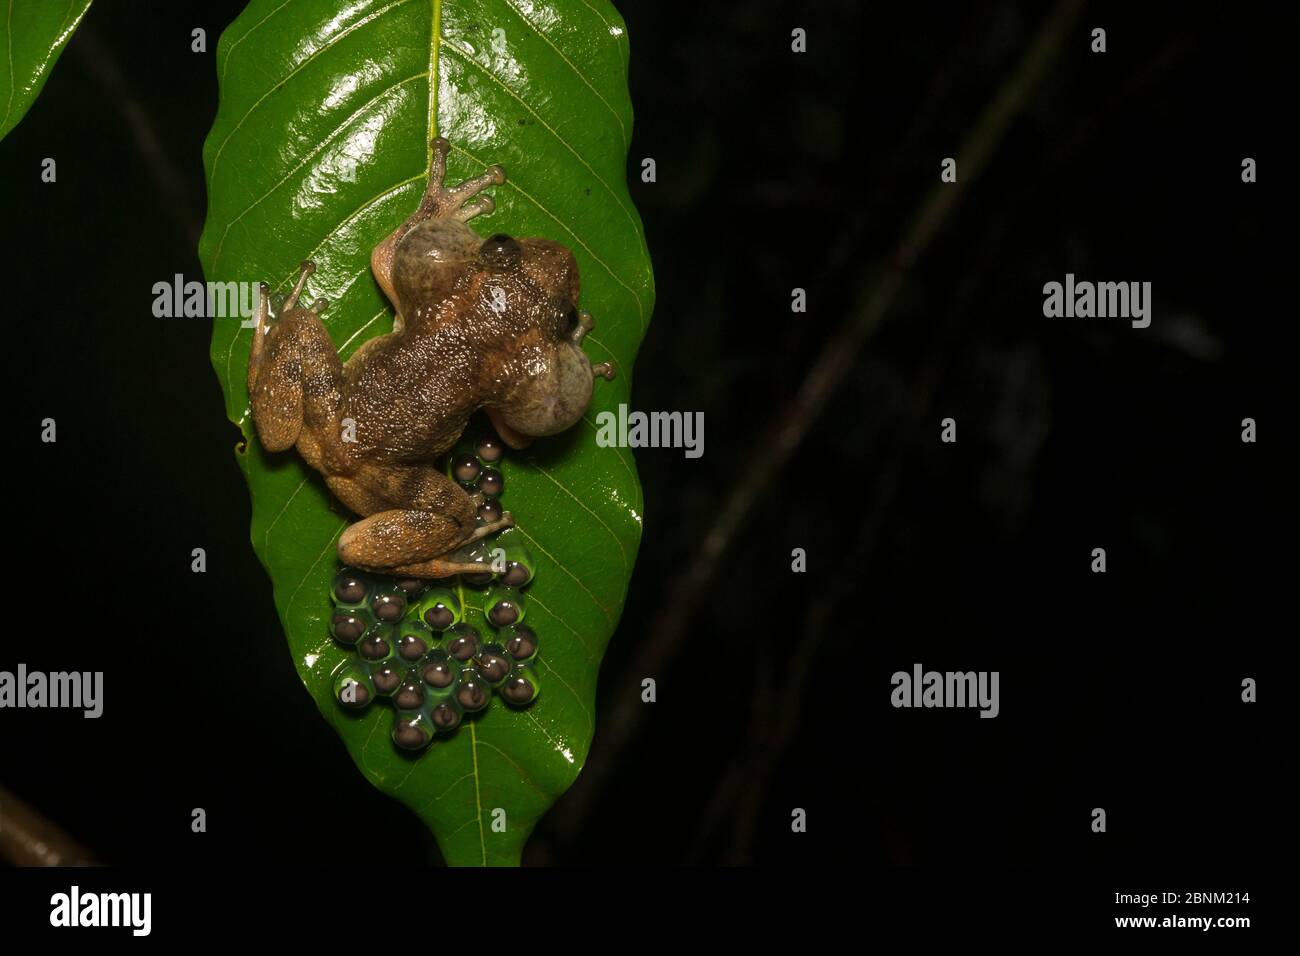 Grenouille de nuit d’Humayun (nyctibatrachus humayuni), groupe d’œufs de garde mâles sur la feuille. Ghats de l'Ouest Amboli, Maharashtra, Inde. Endémique. Vulnérables s Banque D'Images